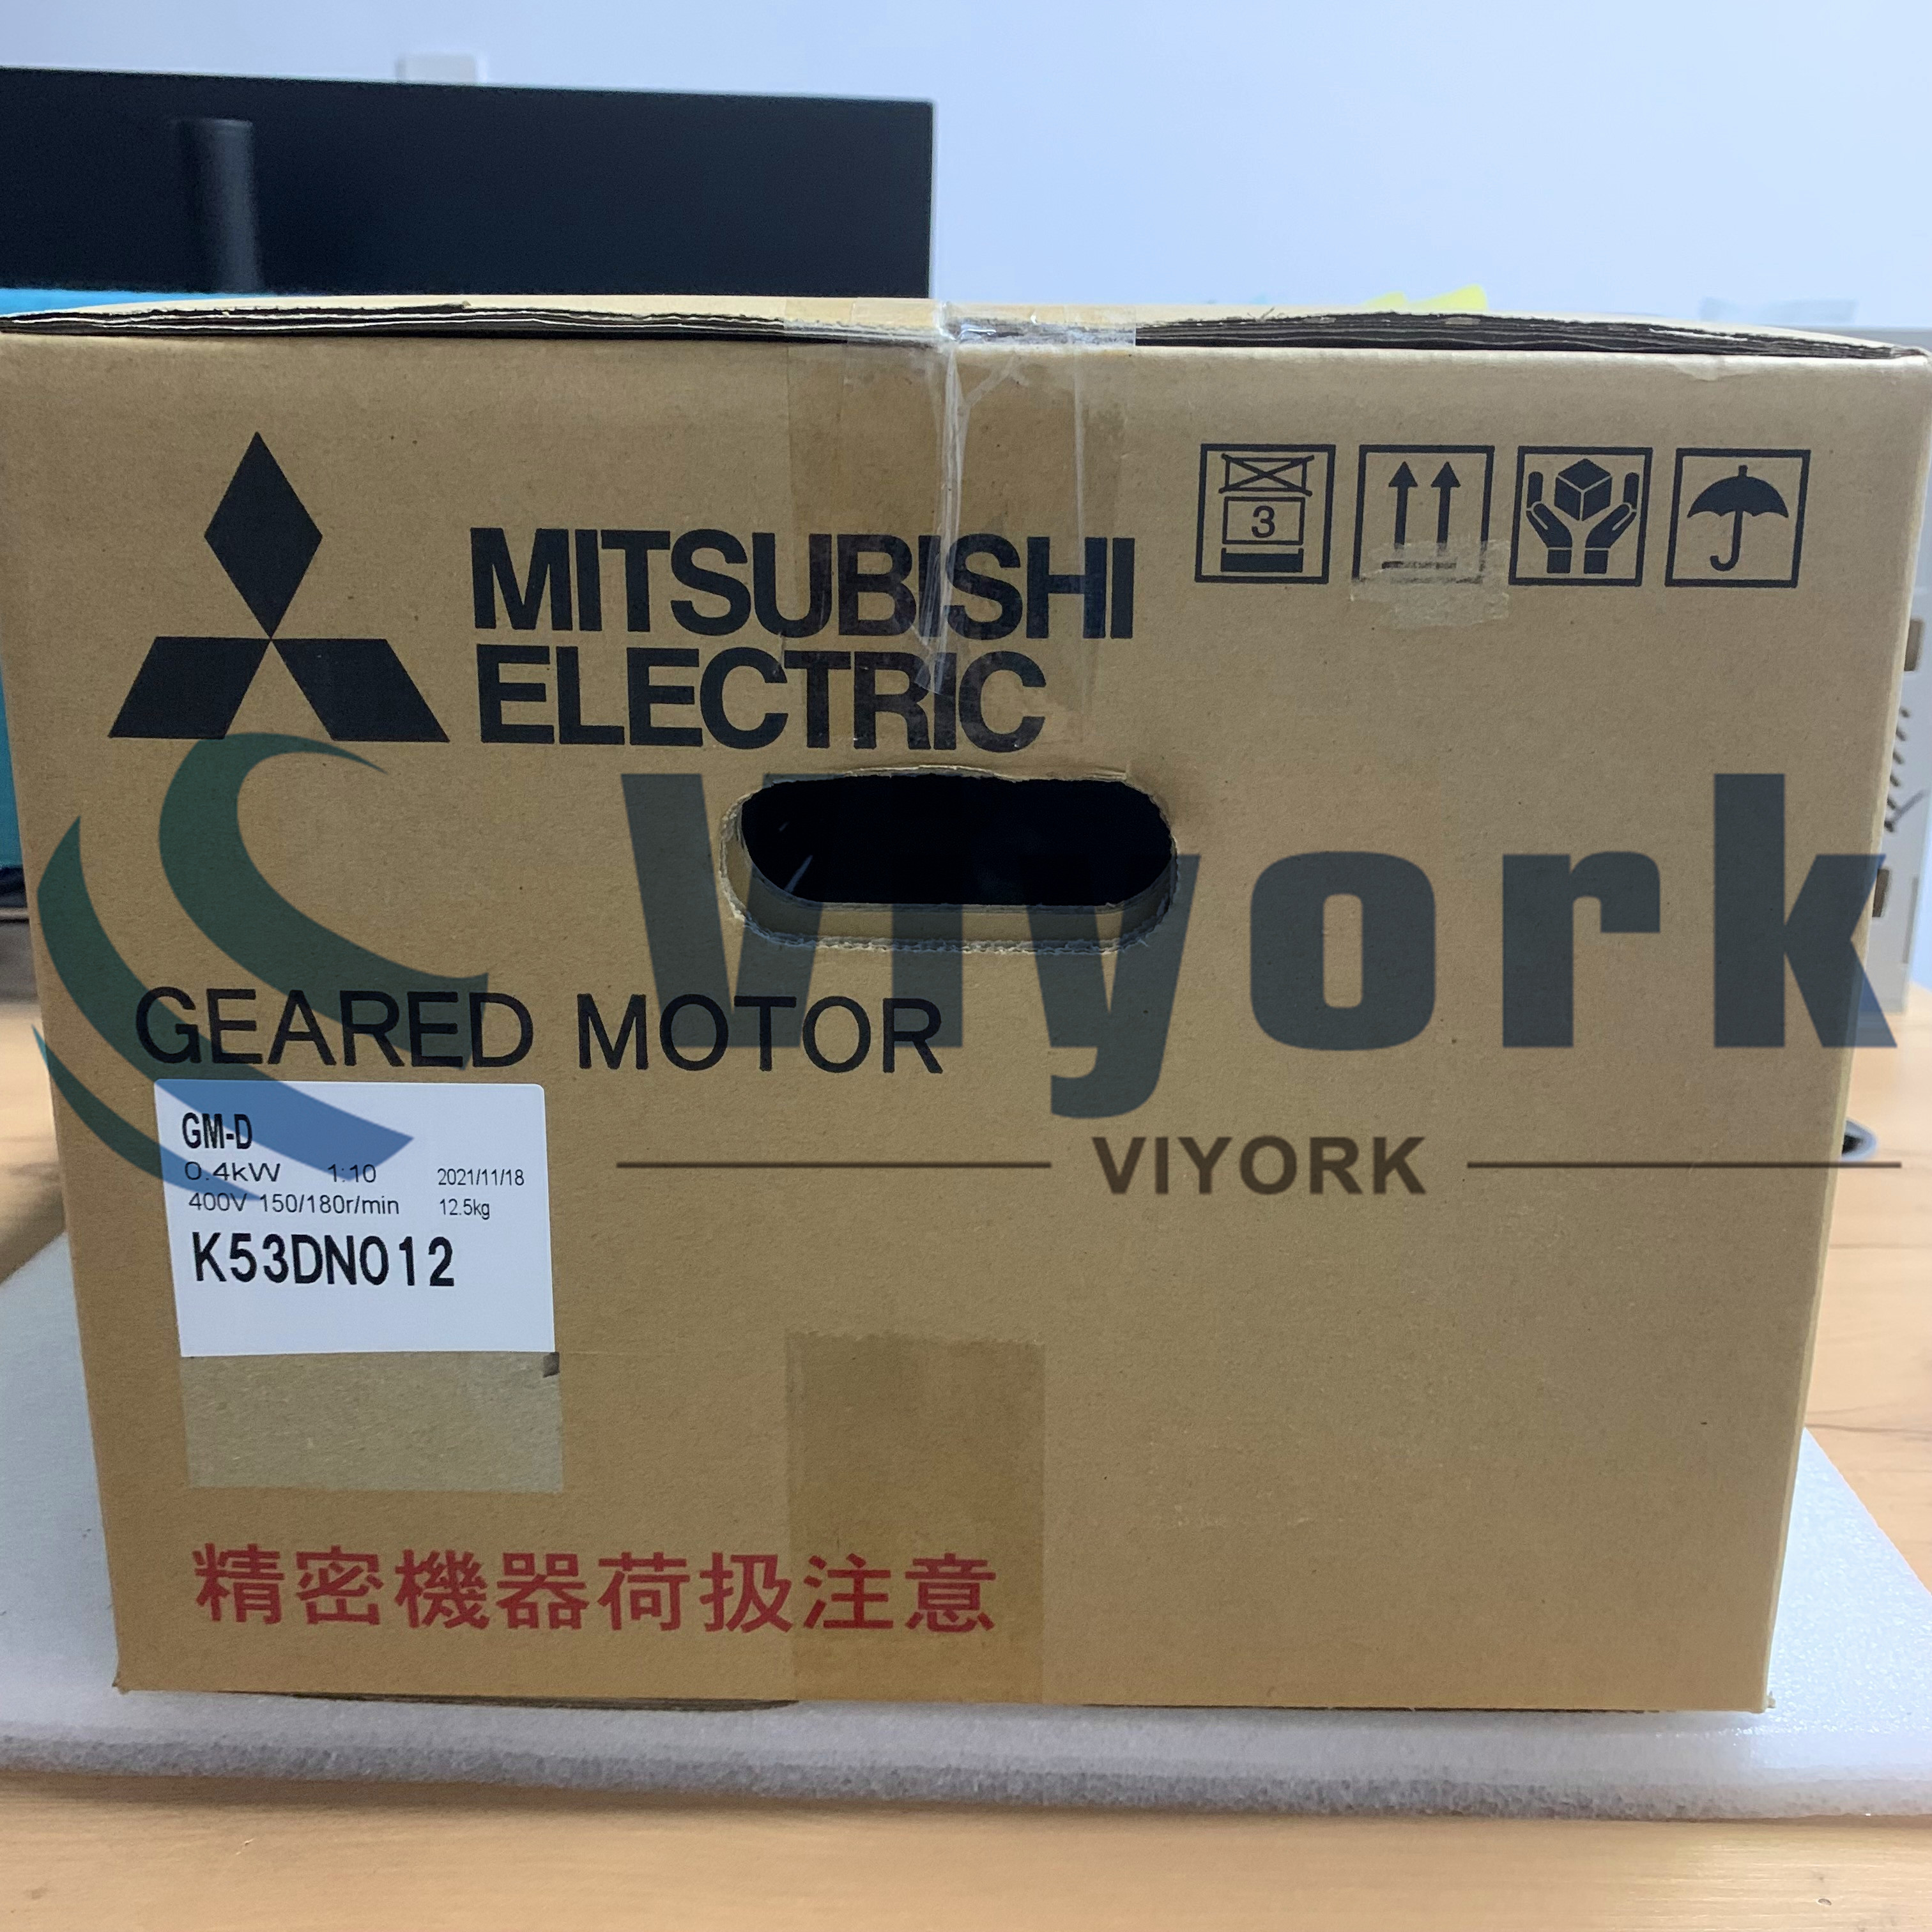 Mitsubishi GM-D GARE MOTOR 1:10 400W 400-400-440V 50/60HZ NEW